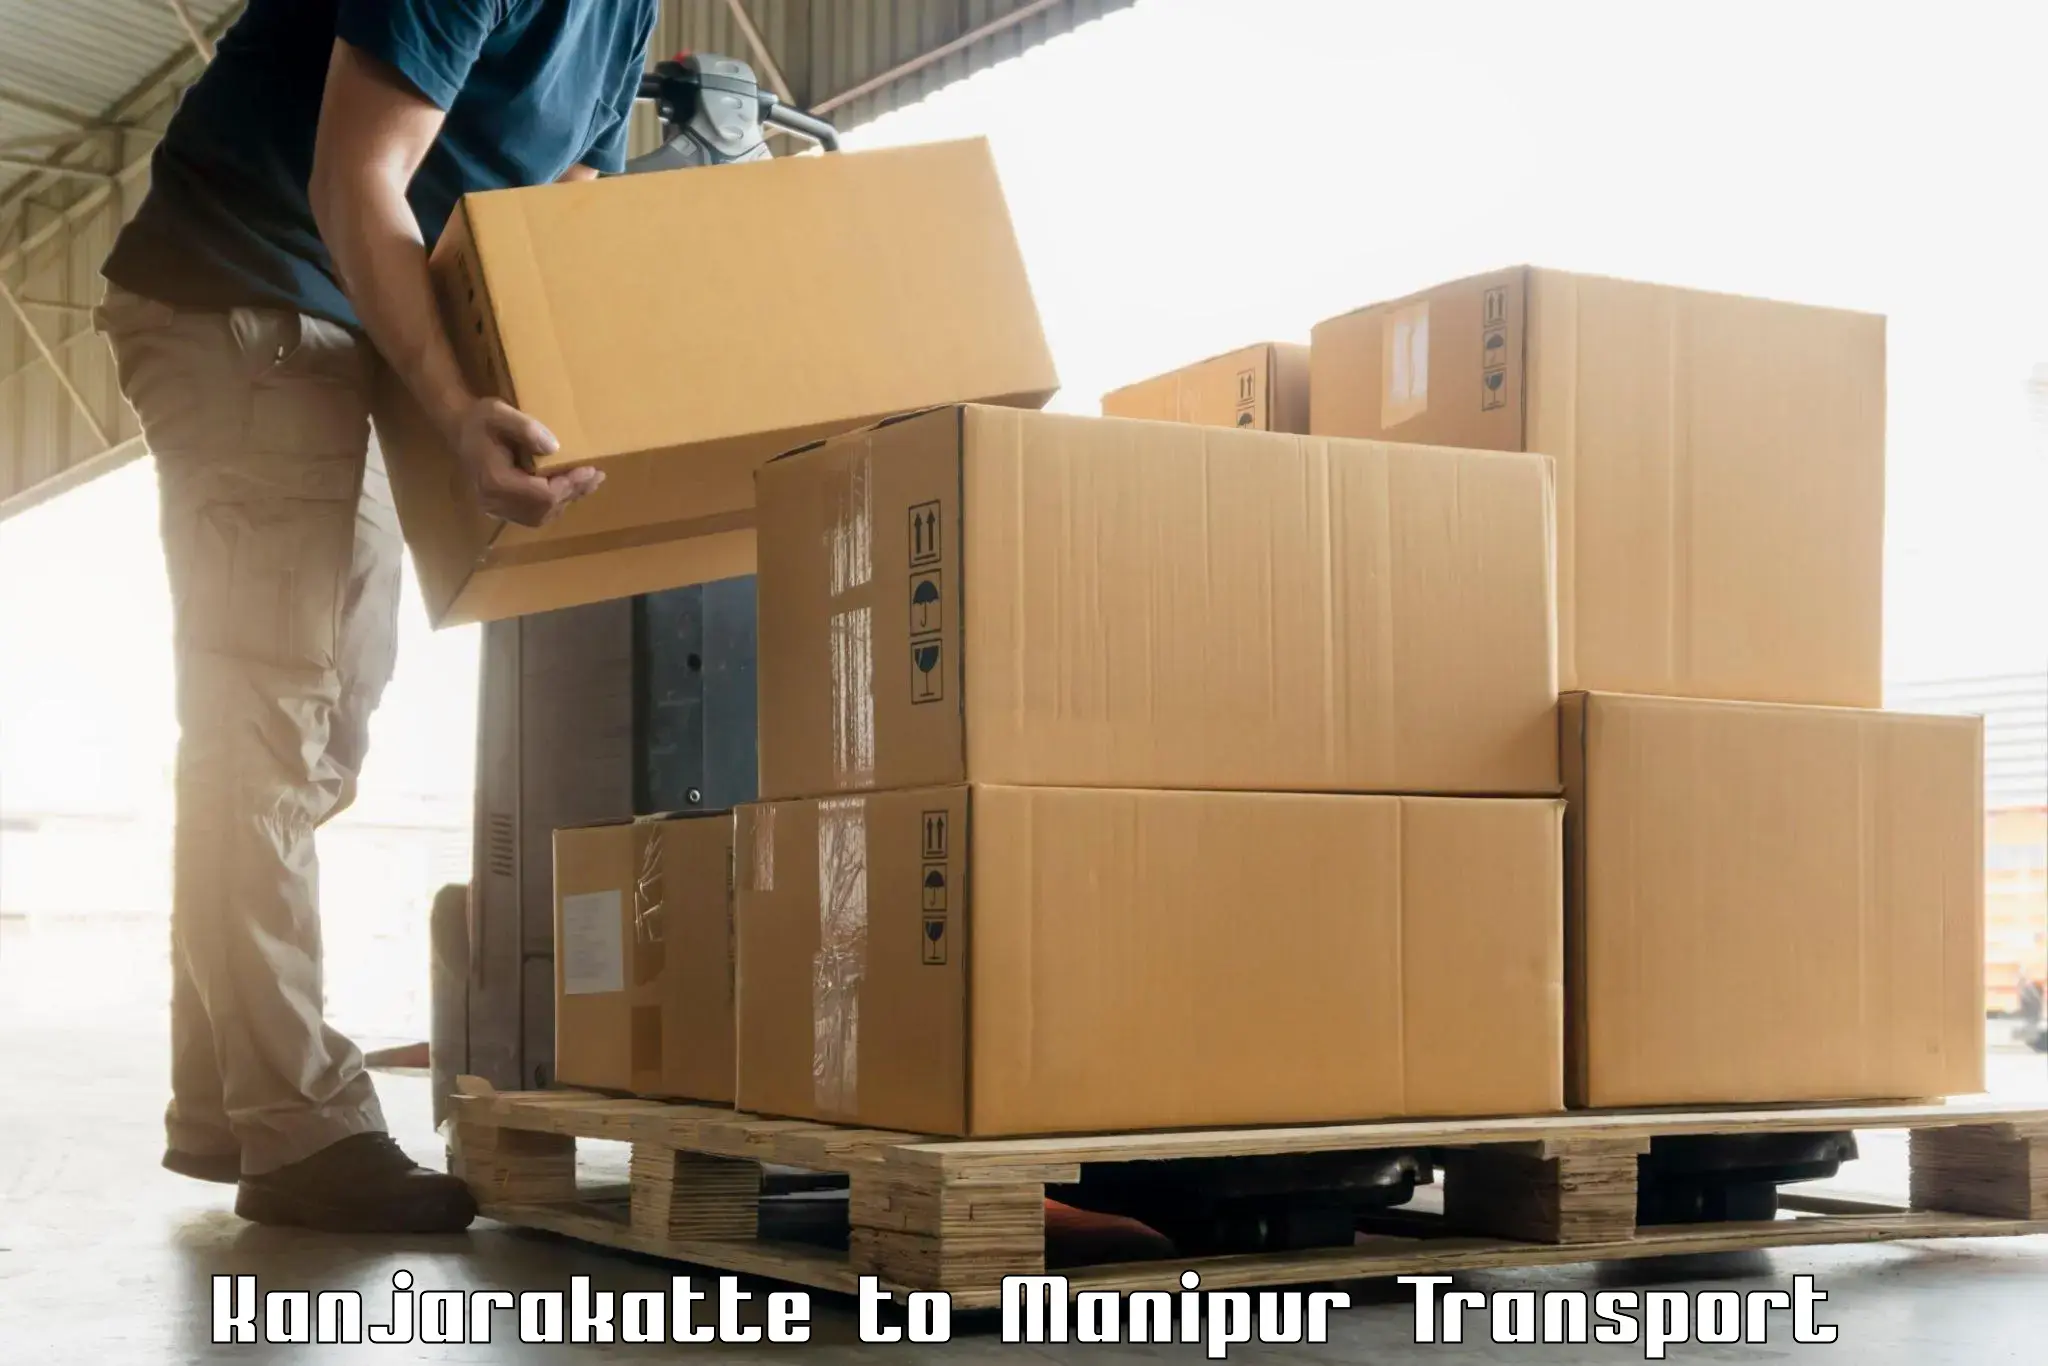 Land transport services Kanjarakatte to Manipur